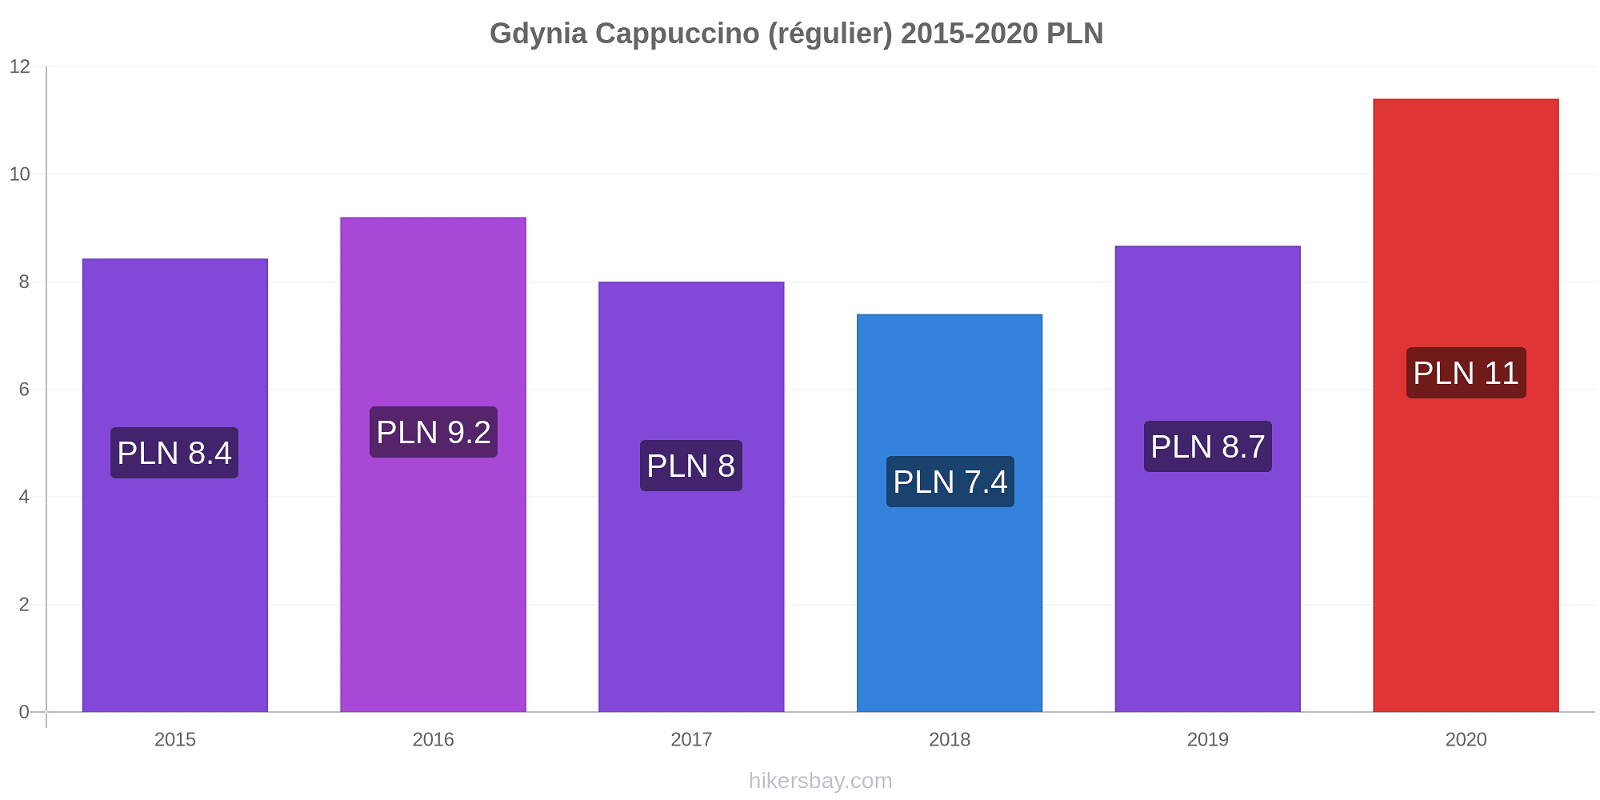 Gdynia changements de prix Cappuccino (régulier) hikersbay.com